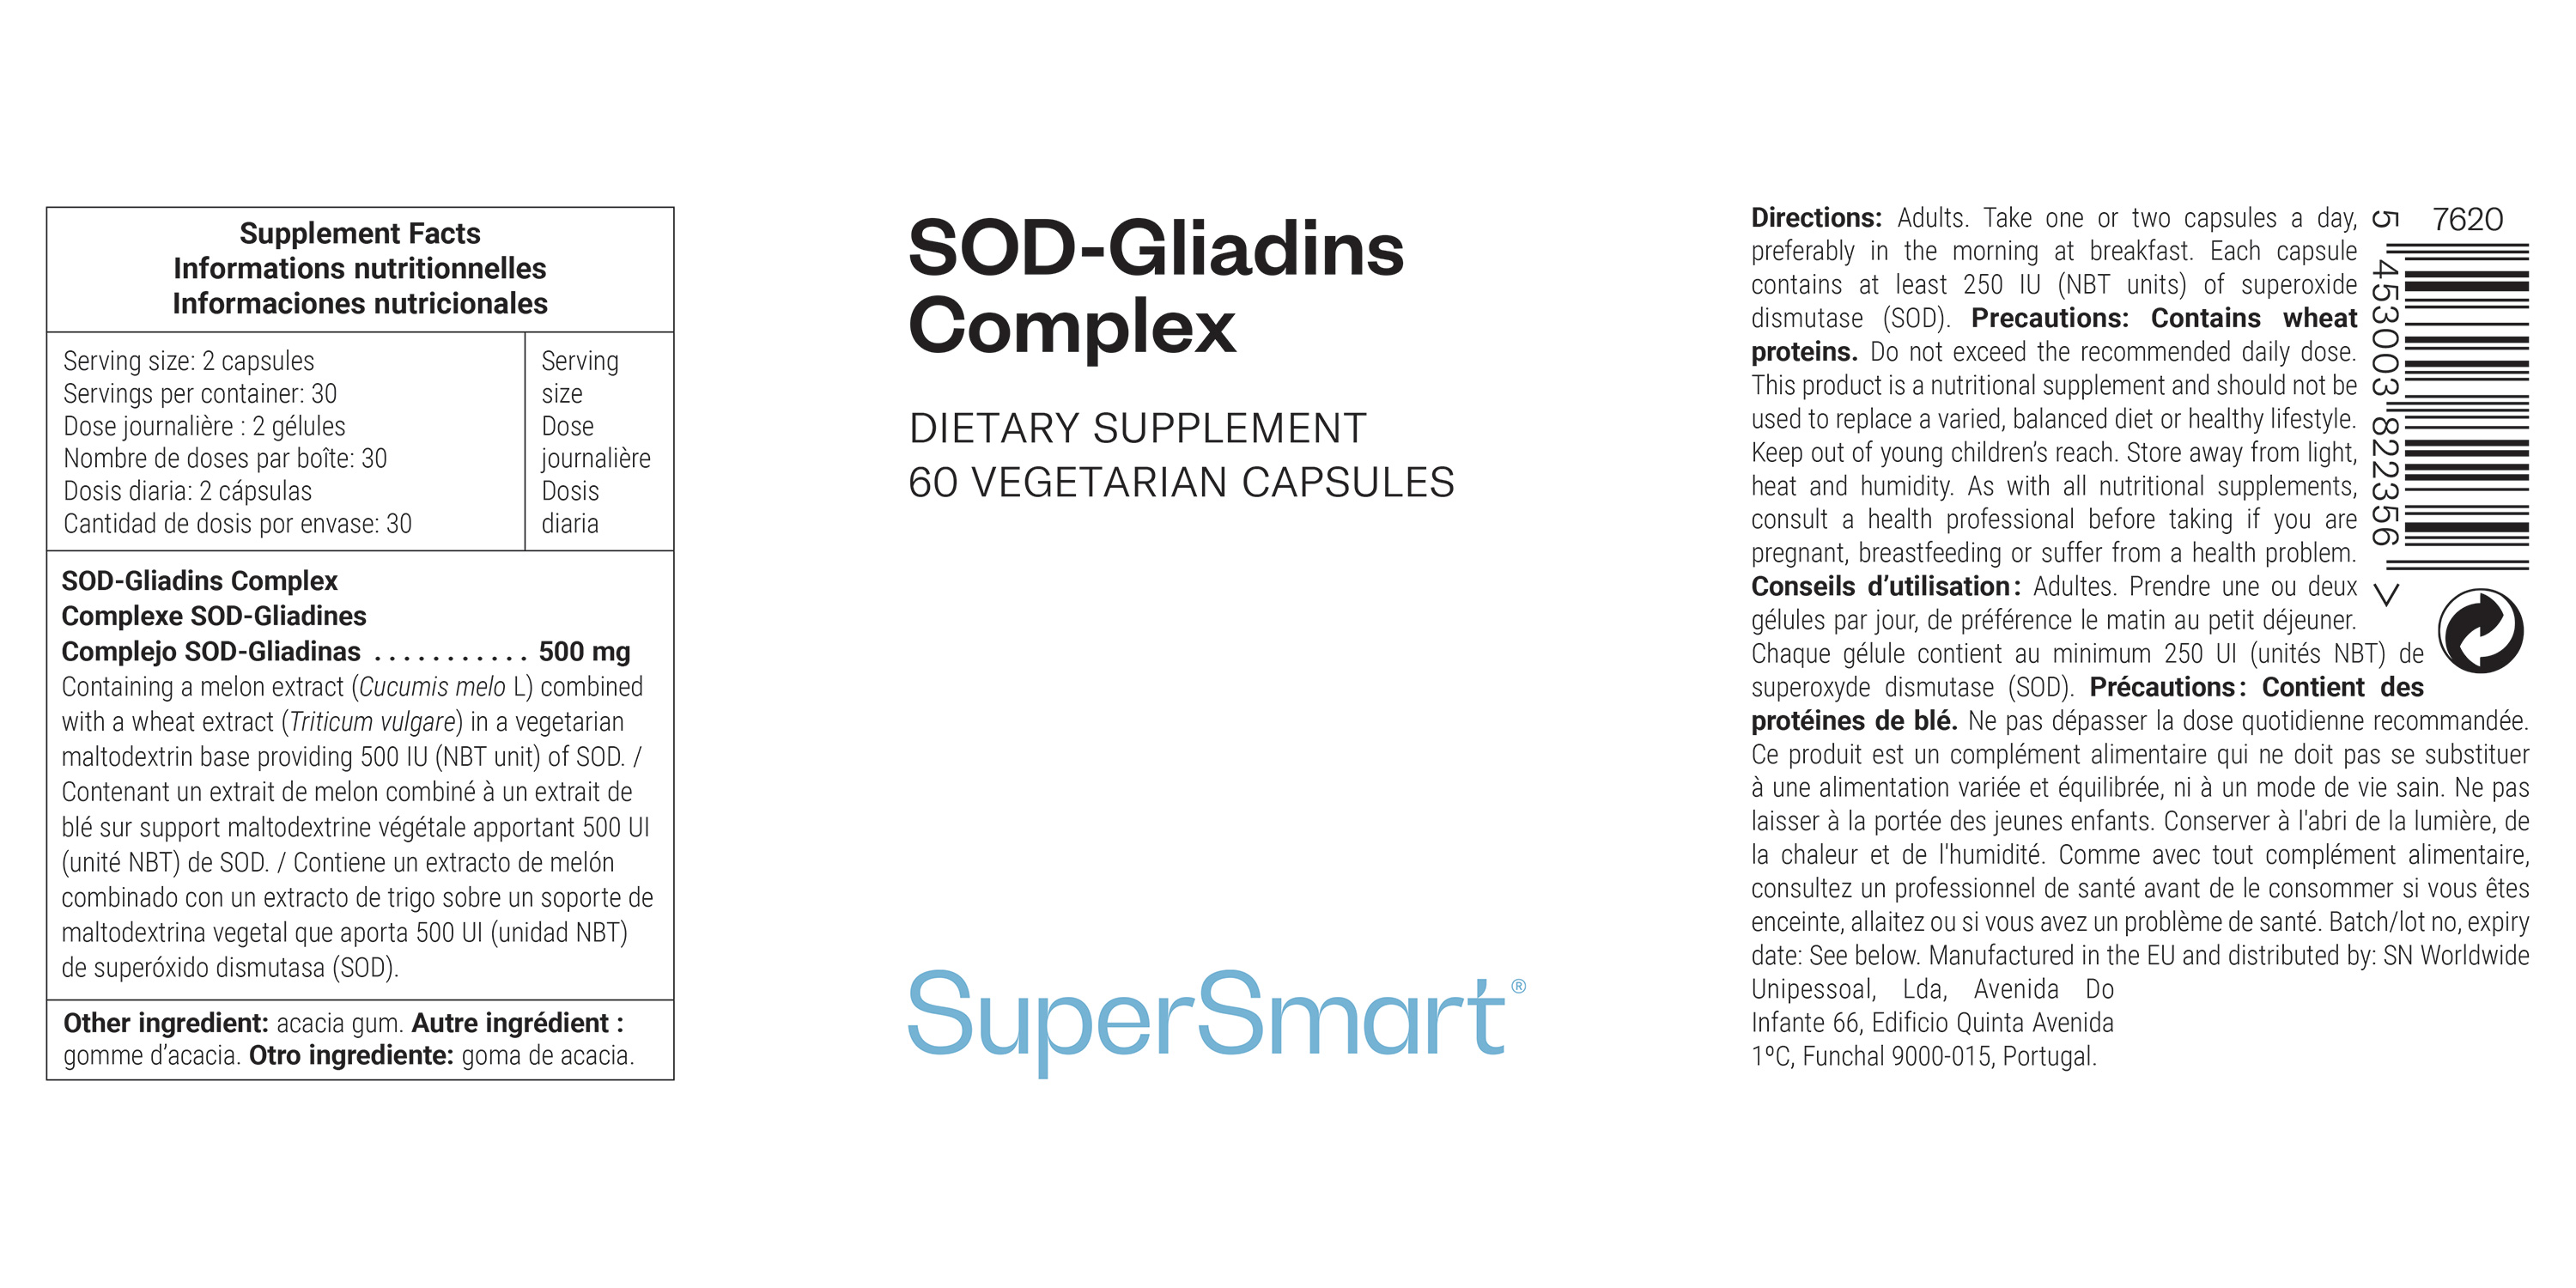 SOD-Gliandis Complex suplemento alimentar, super antioxidante